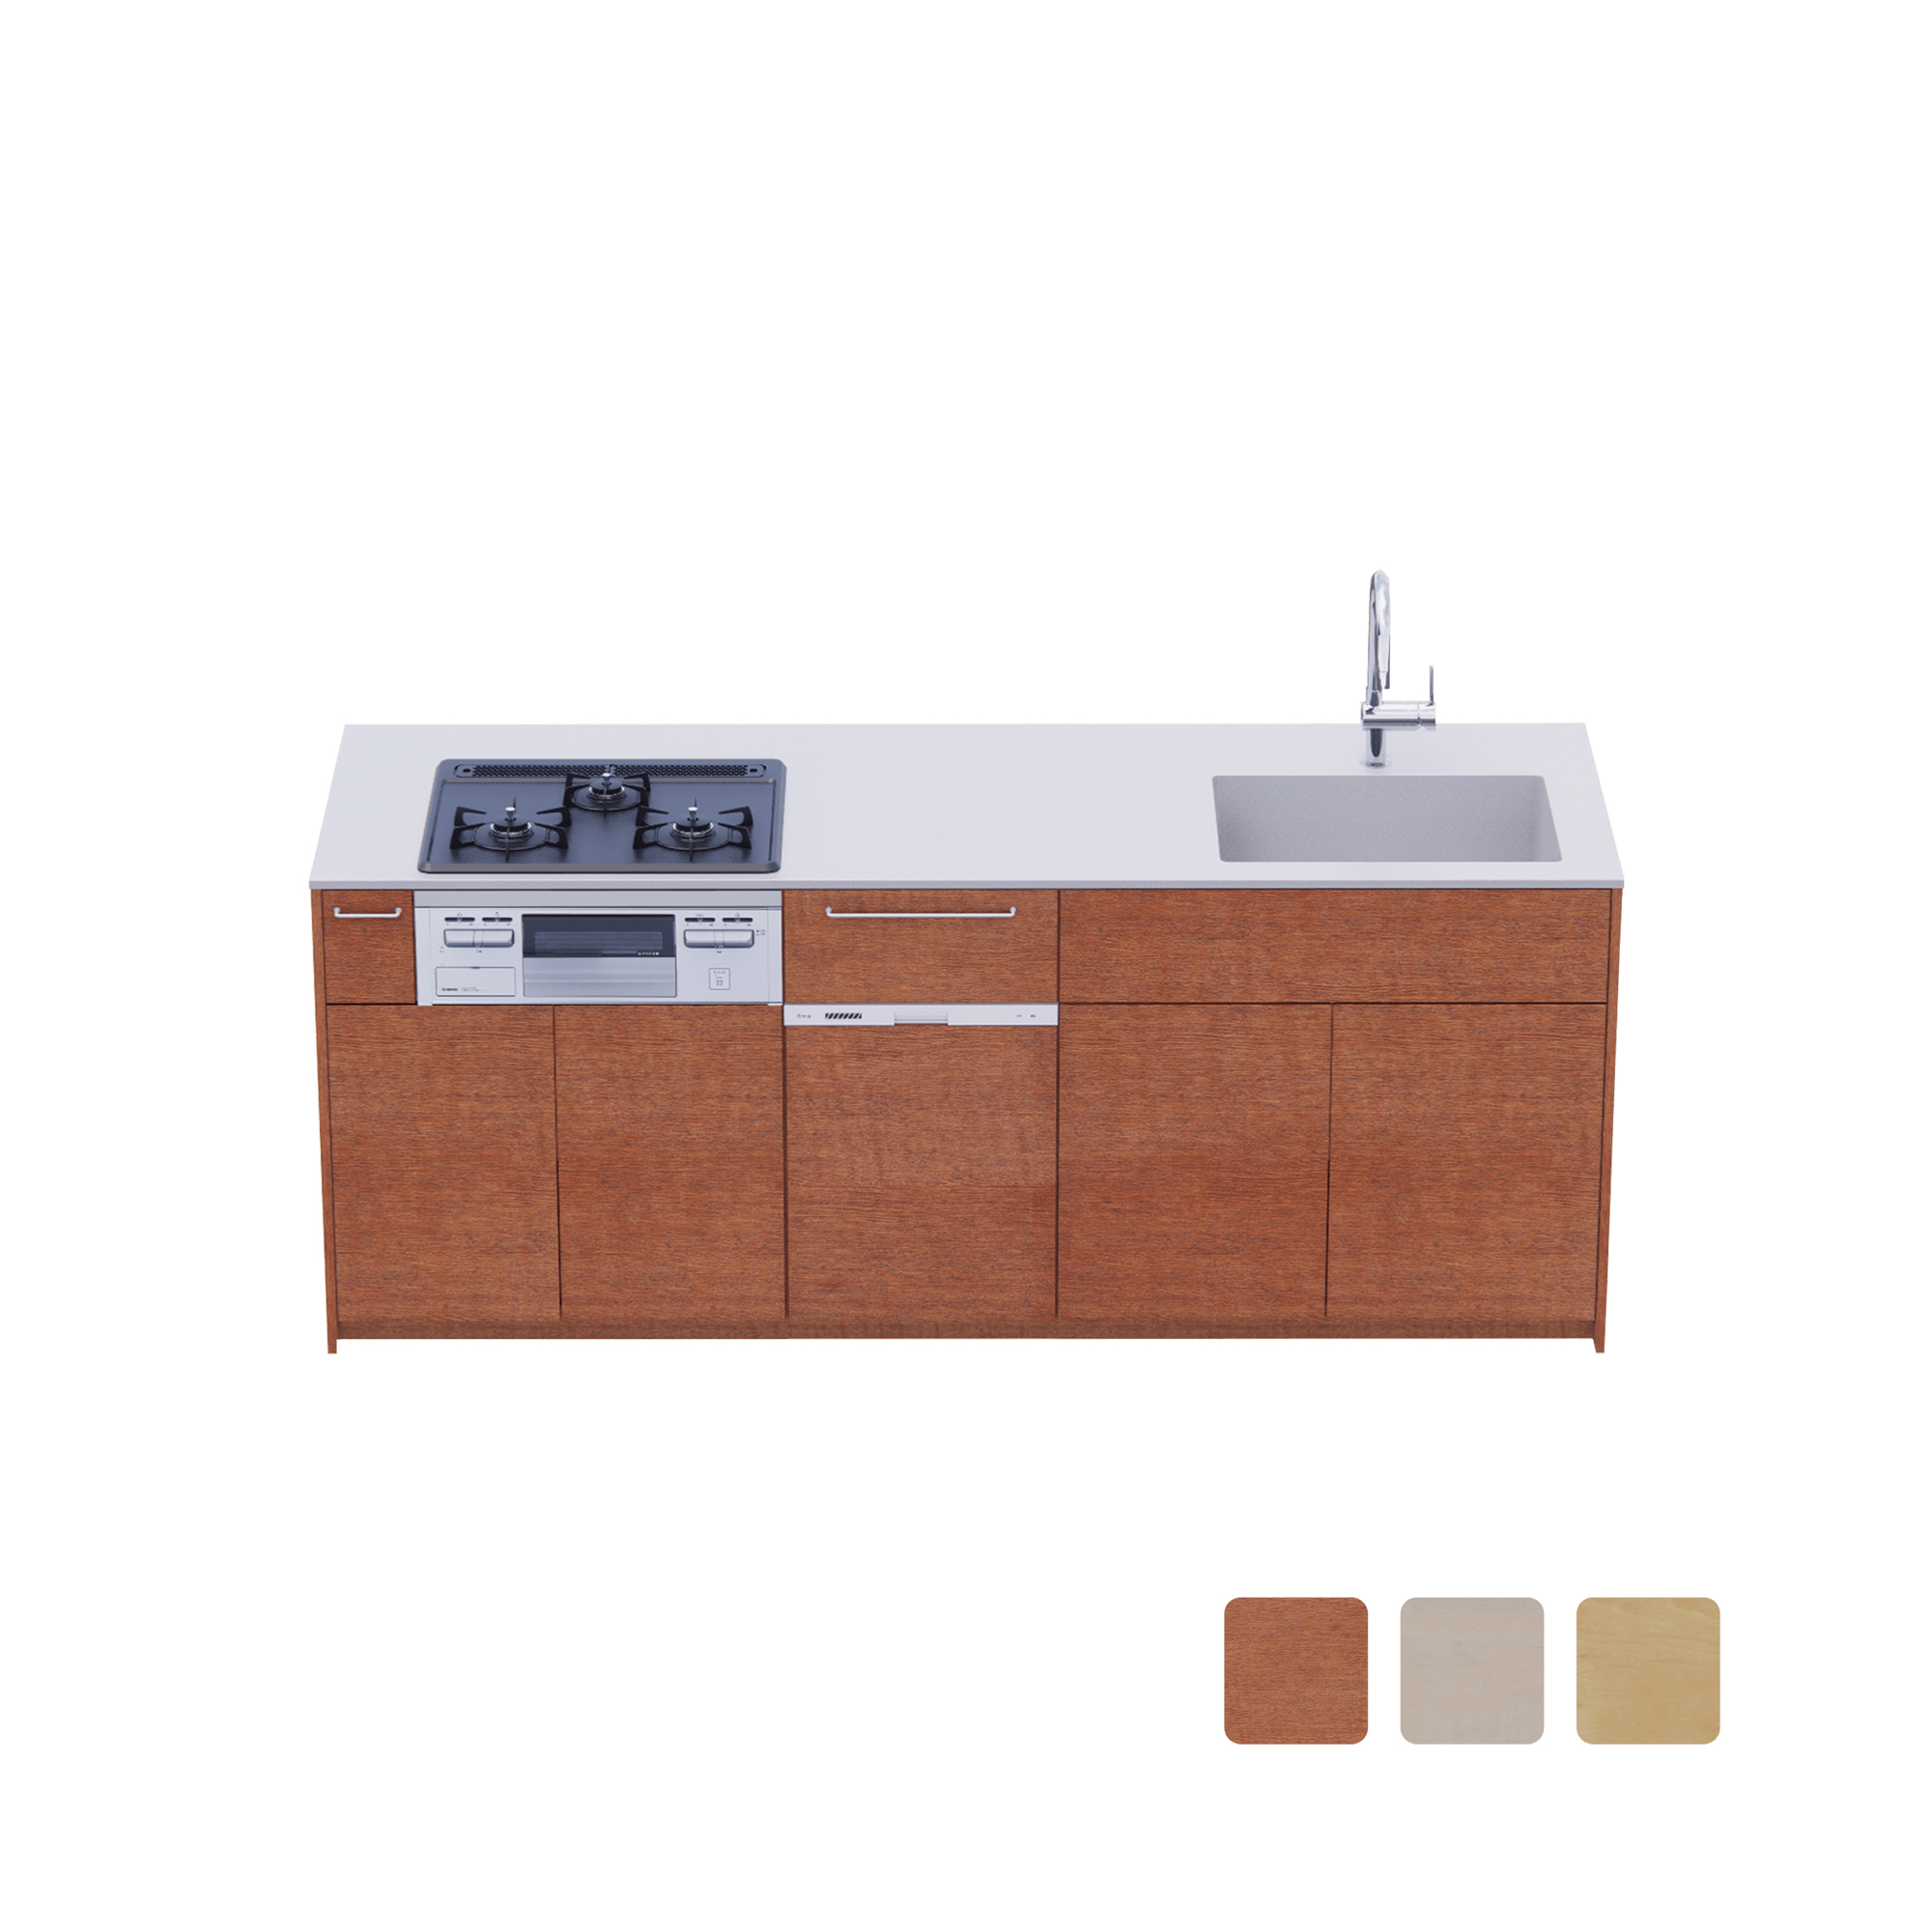 木製システムキッチン 対面型 W2140～2290・コンロあり / オーブンなし / 食洗機あり KB-KC022-38-G183 対面型 W2140　※ 別売り品の水栓・コンロ・食洗機を設置した時のイメージです